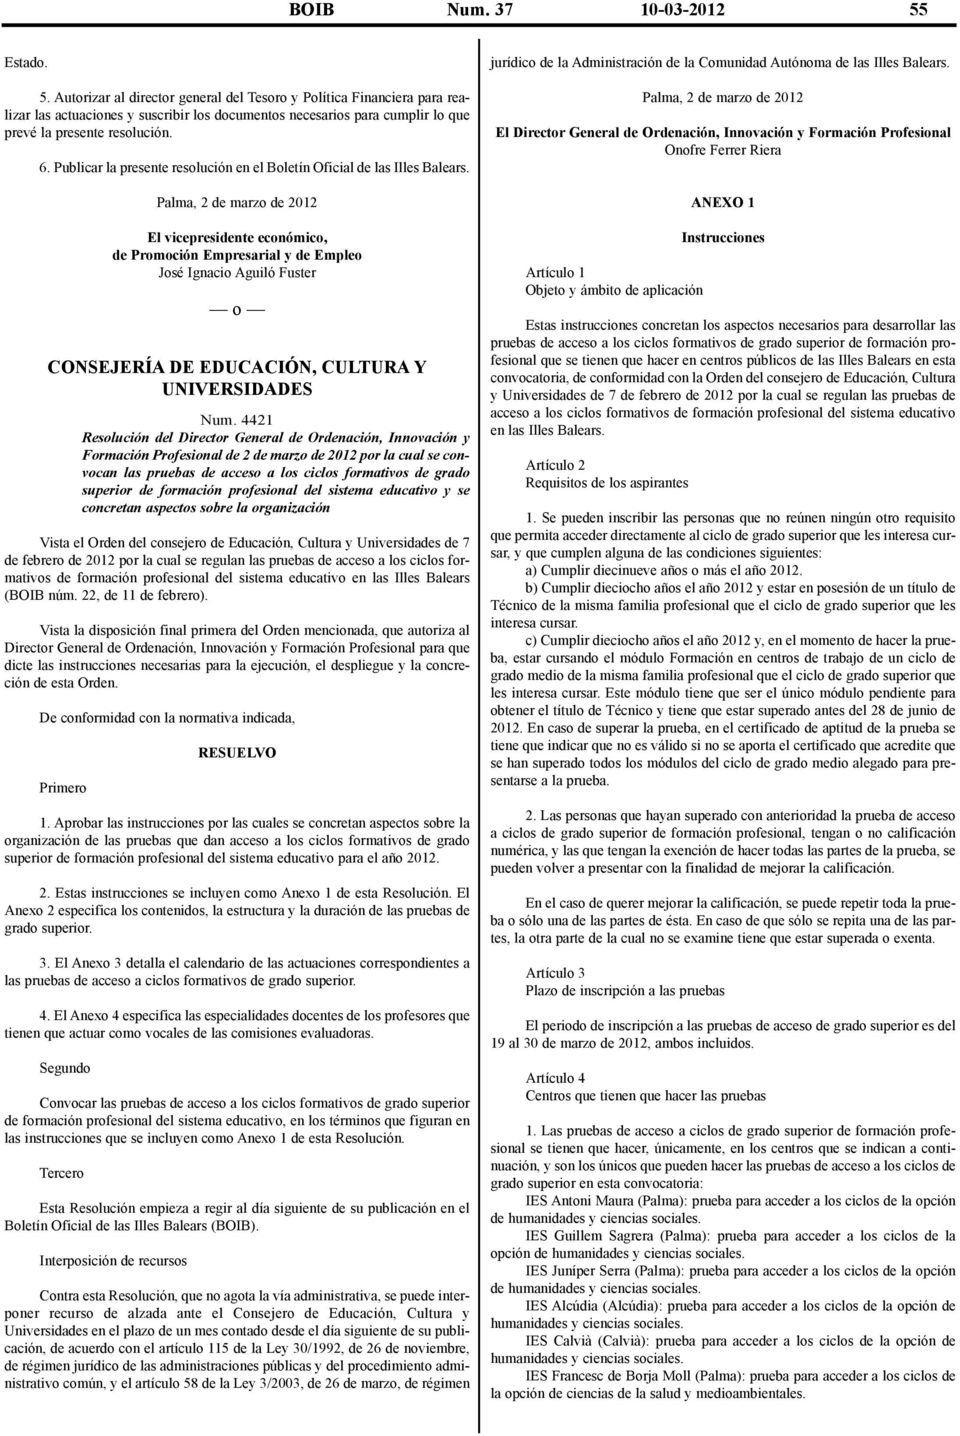 Publicar la presente resolución en el Boletín Oficial de las Illes Balears.